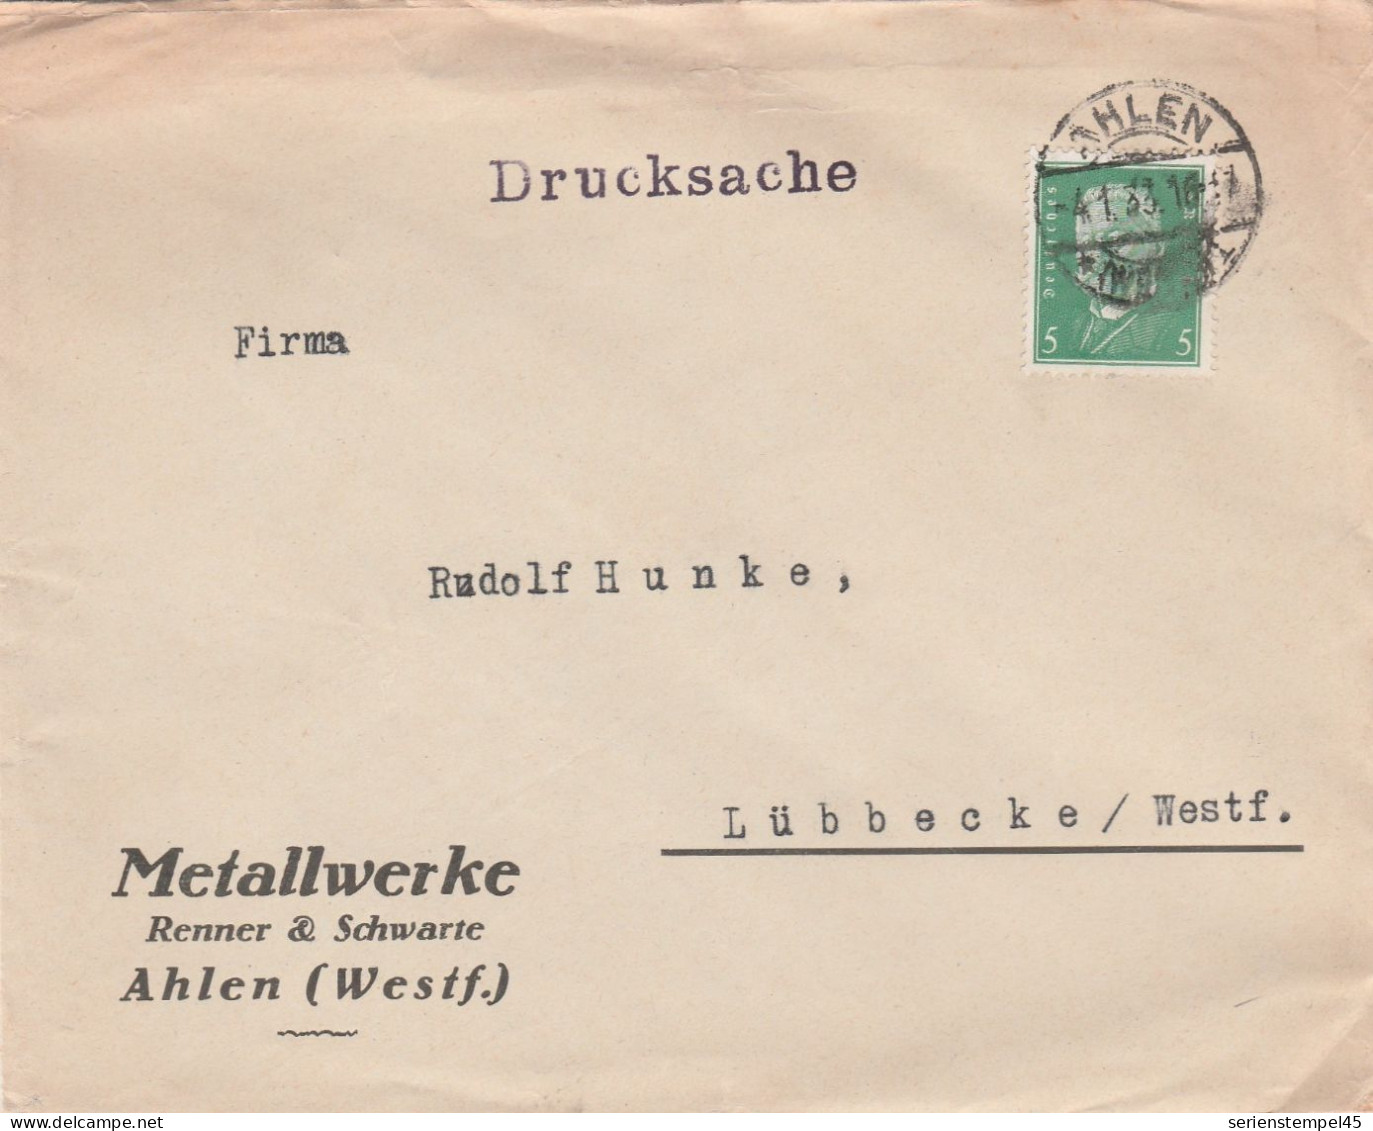 Deutsches Reich Firmenbrief Drucksache Ahlen 1933 Metallwerke Renner & Schwarte Ahlen Westfalen - Covers & Documents